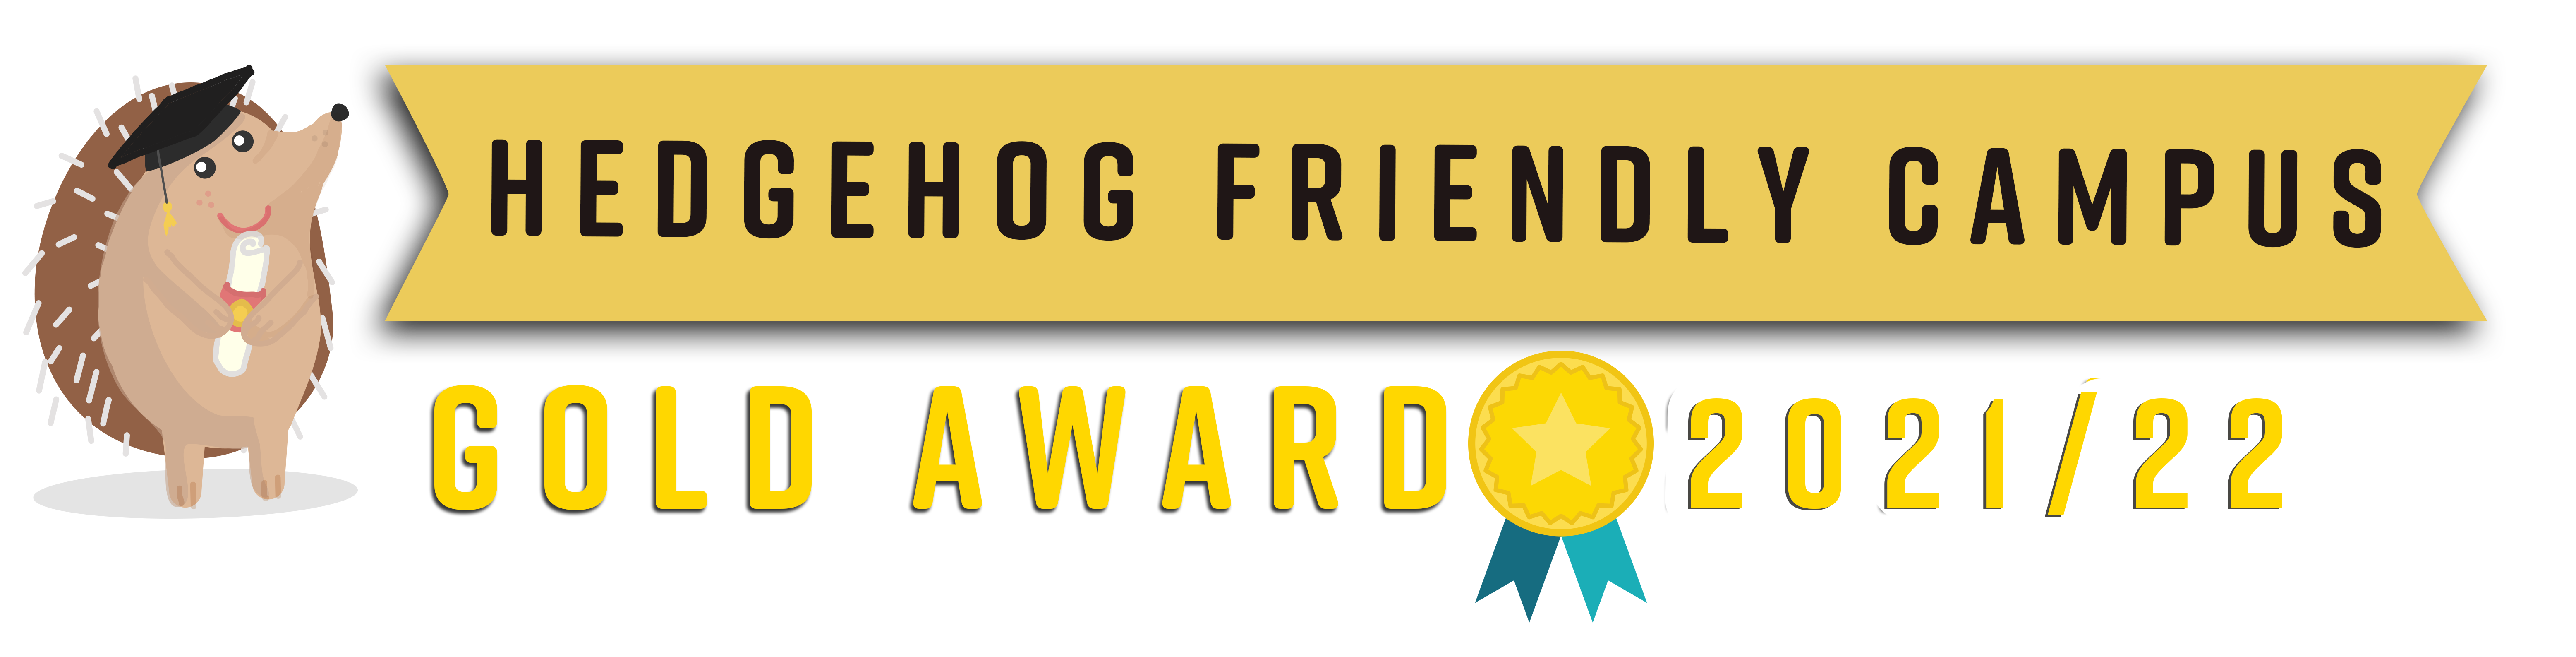 Hedgehog Friendly Campus Gold Award 2021/22